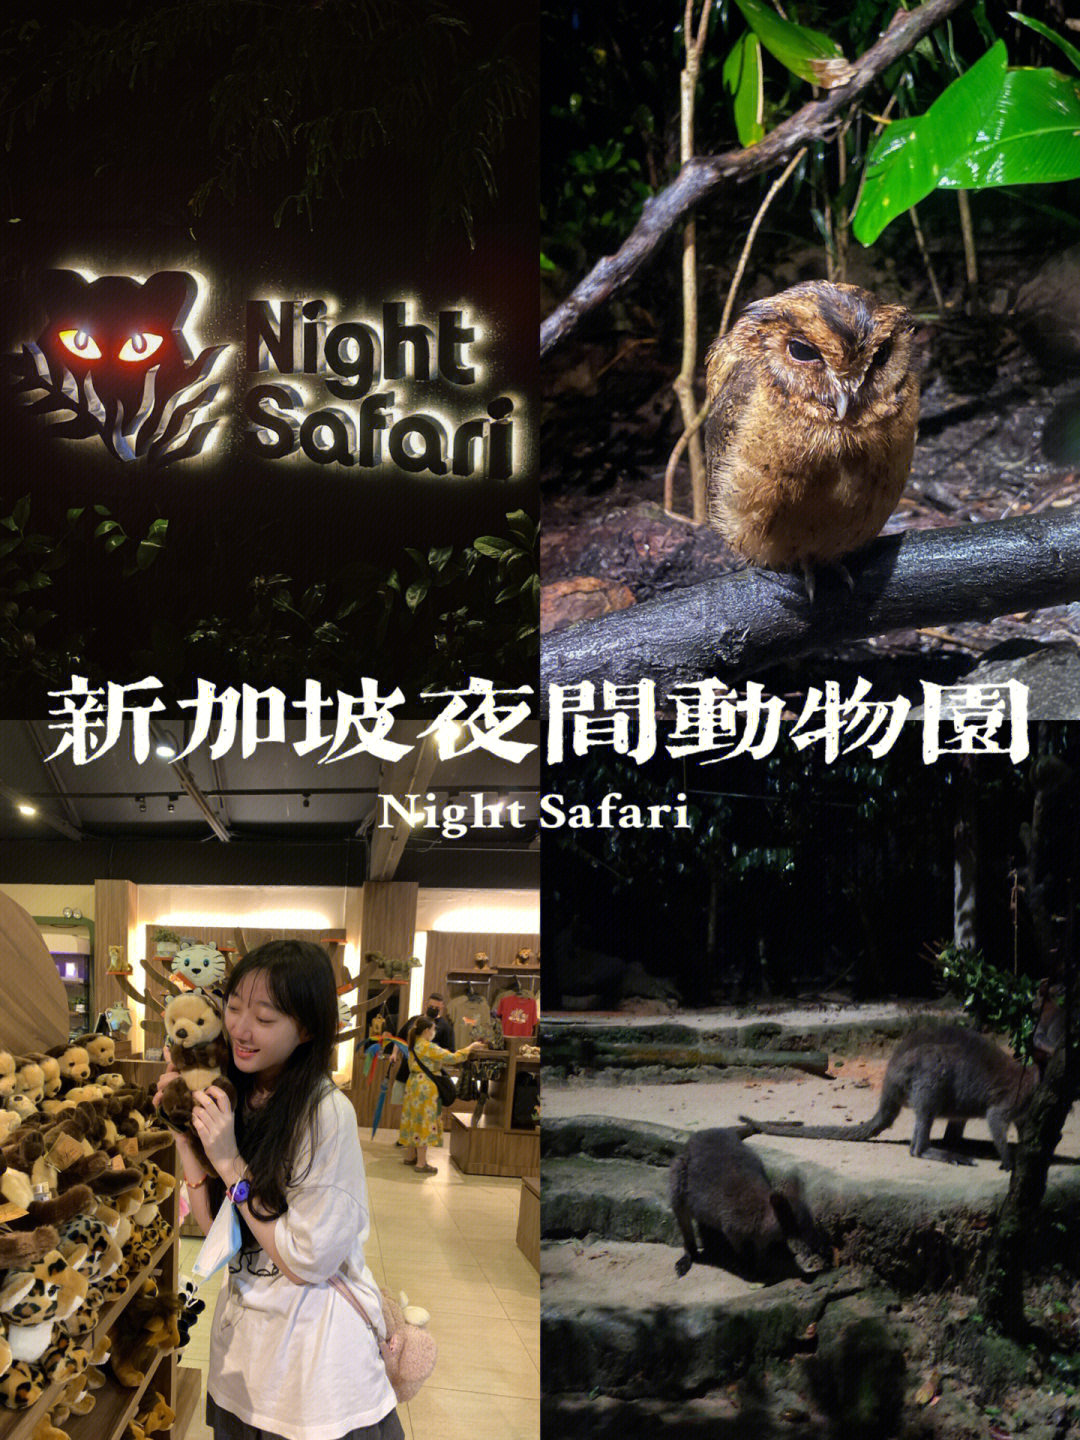 上海大自然野生昆虫馆电话_上海野生动物园电话_上海野生动物园 动物